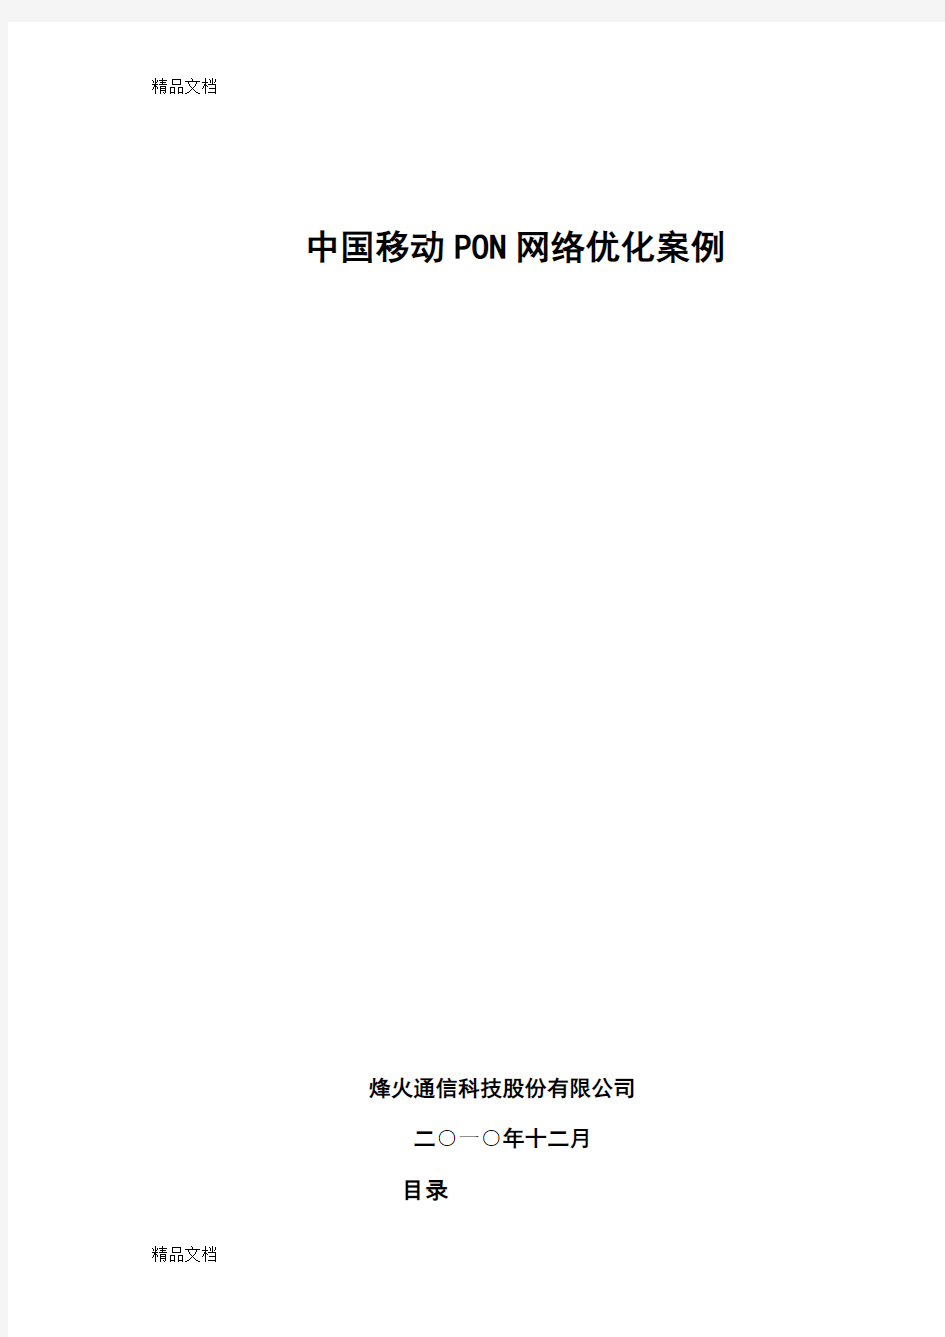 中国移动PON网络维护优化案例知识讲解